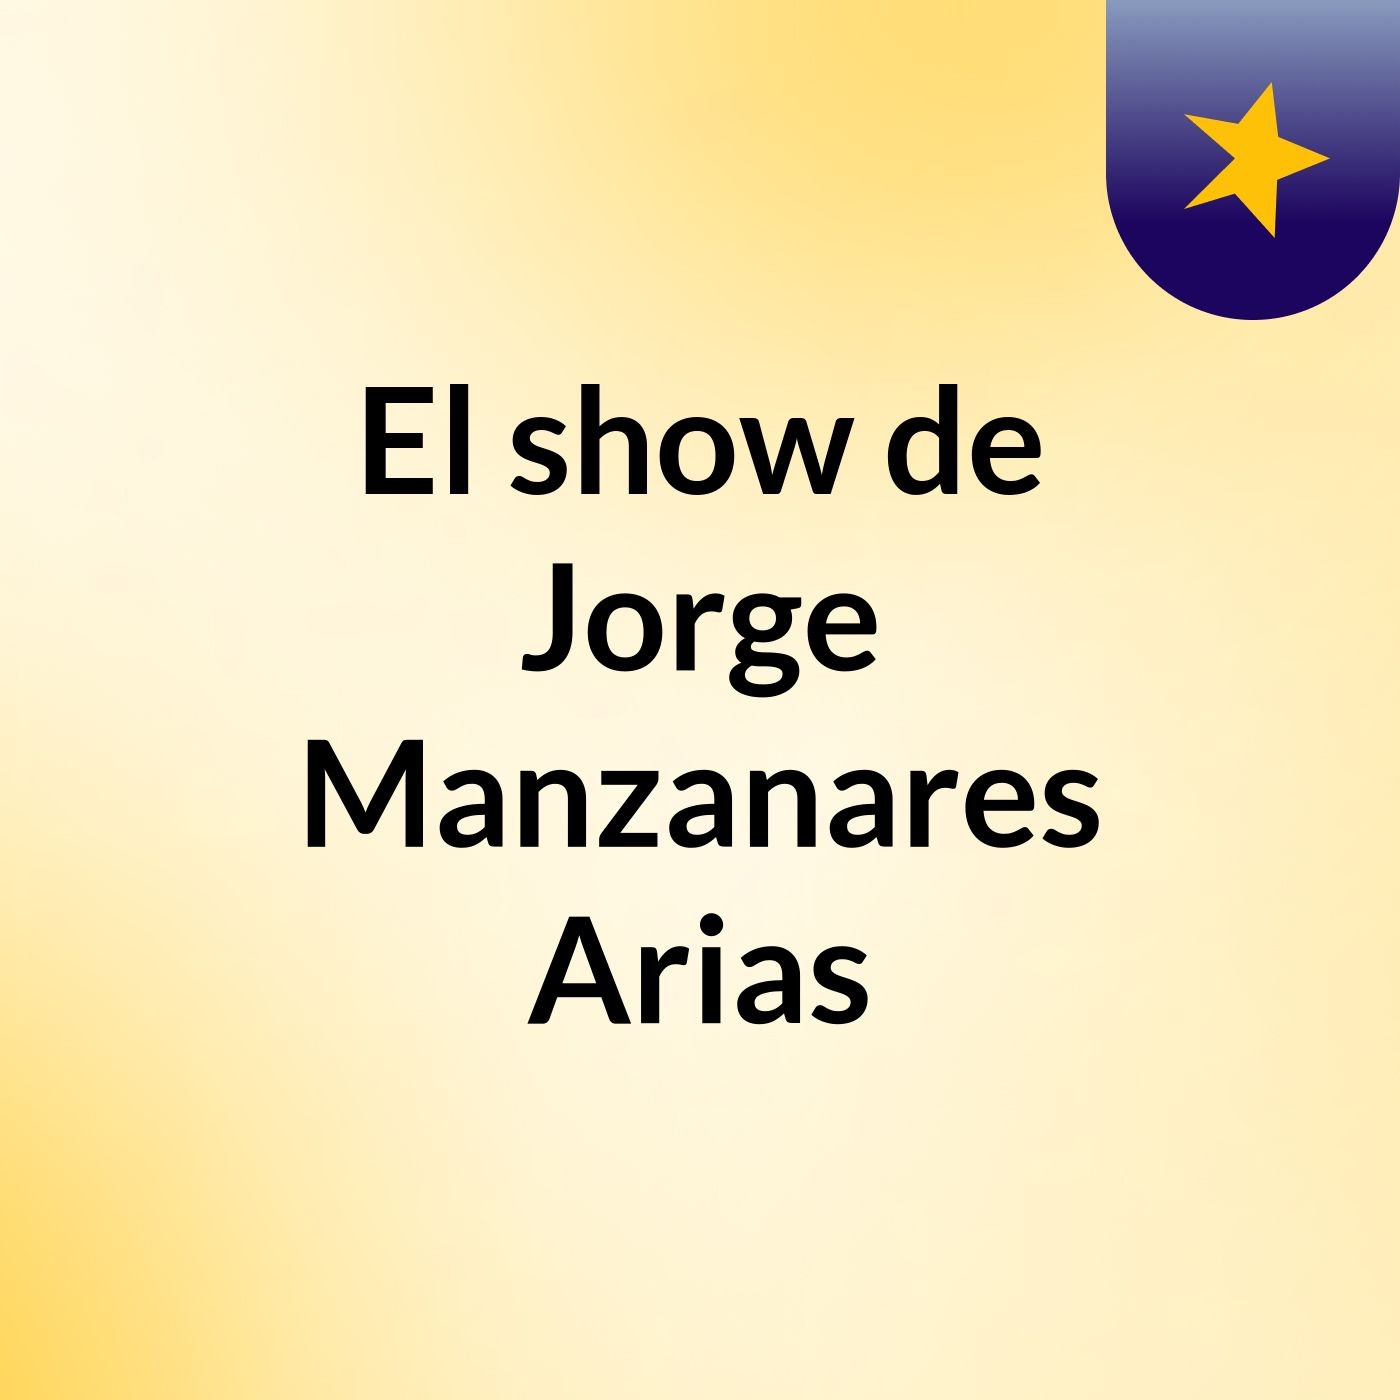 El show de Jorge Manzanares Arias